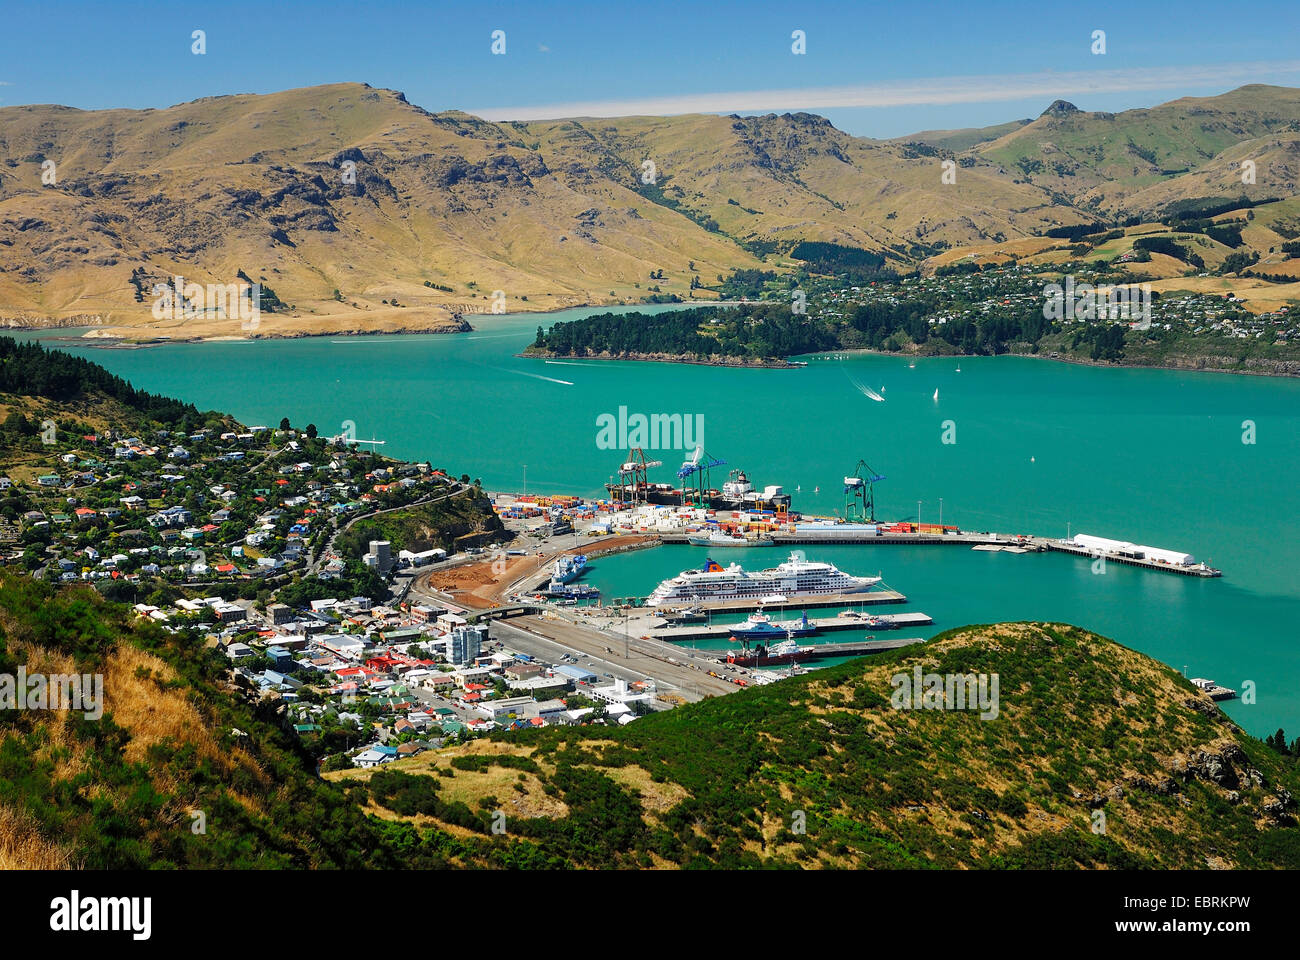 Vue panoramique sur Lyttelton Harbour avec la péninsule de Banks dans l'arrière-plan, la Nouvelle-Zélande, l'île du sud, Christchurch, Canterbury Banque D'Images